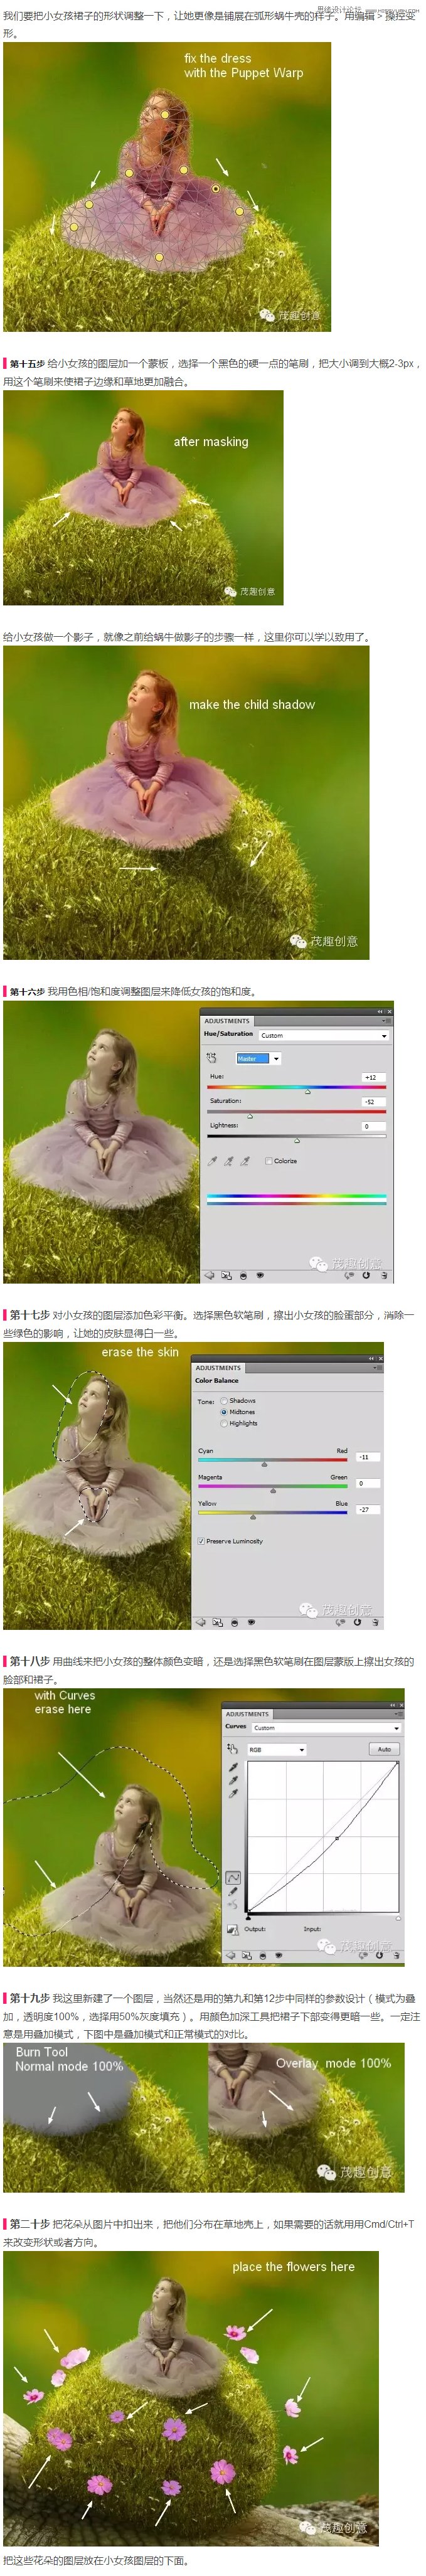 Photoshop合成小女孩儿骑着蜗牛的梦幻场景,PS教程,图老师教程网